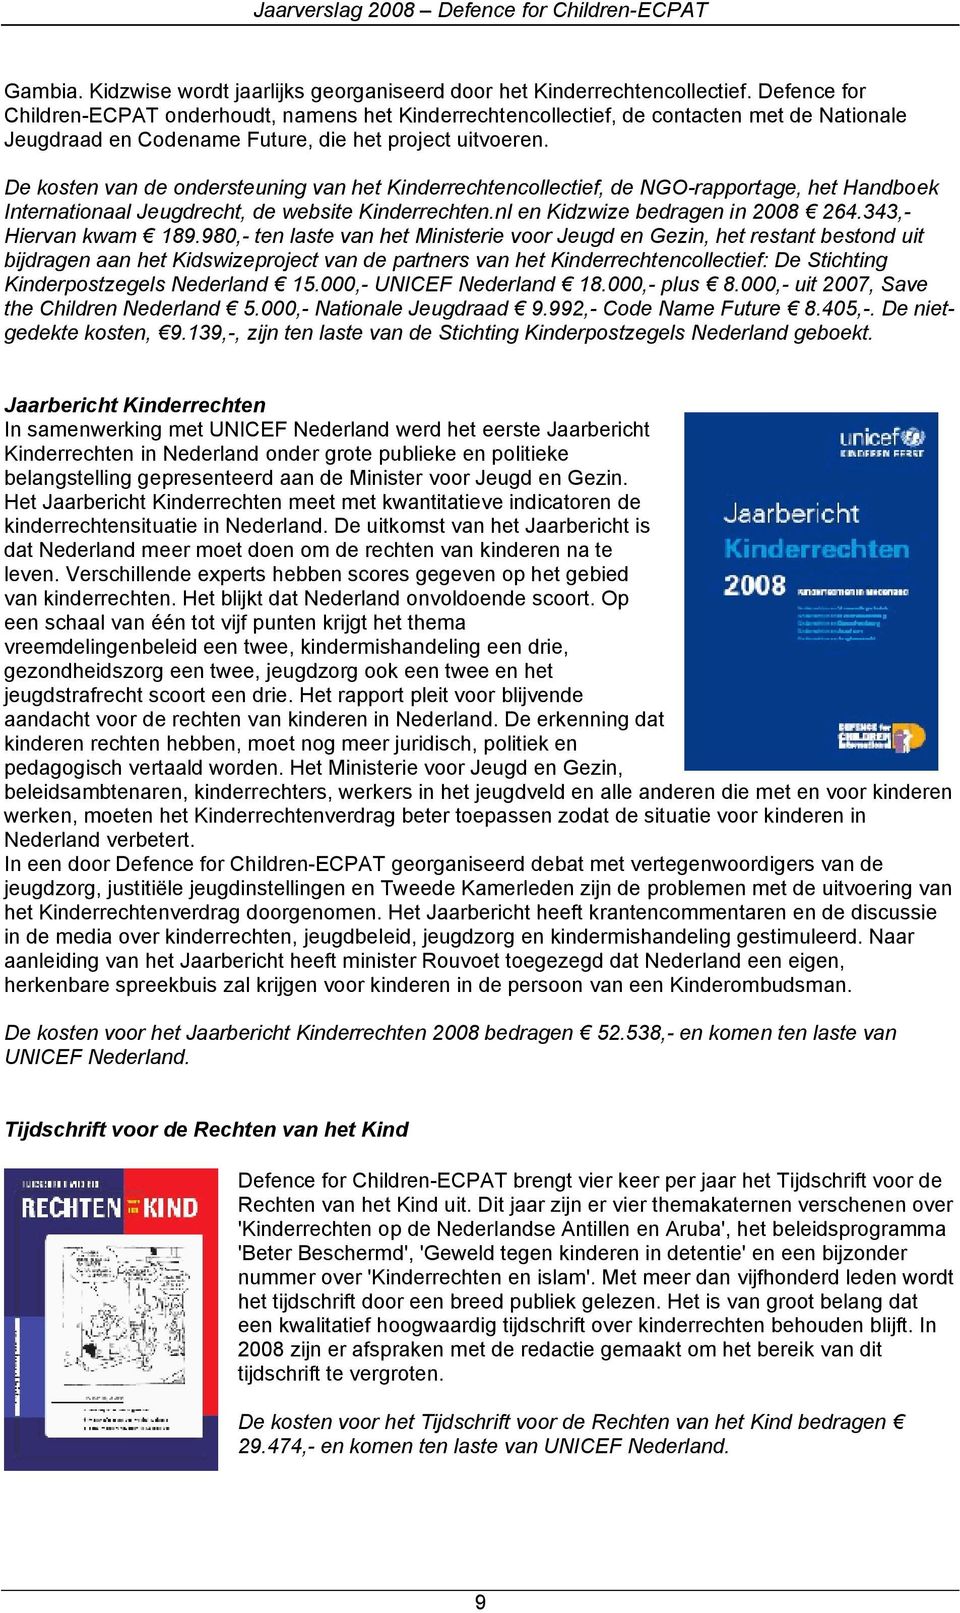 De kosten van de ondersteuning van het Kinderrechtencollectief, de NGO-rapportage, het Handboek Internationaal Jeugdrecht, de website Kinderrechten.nl en Kidzwize bedragen in 2008 264.